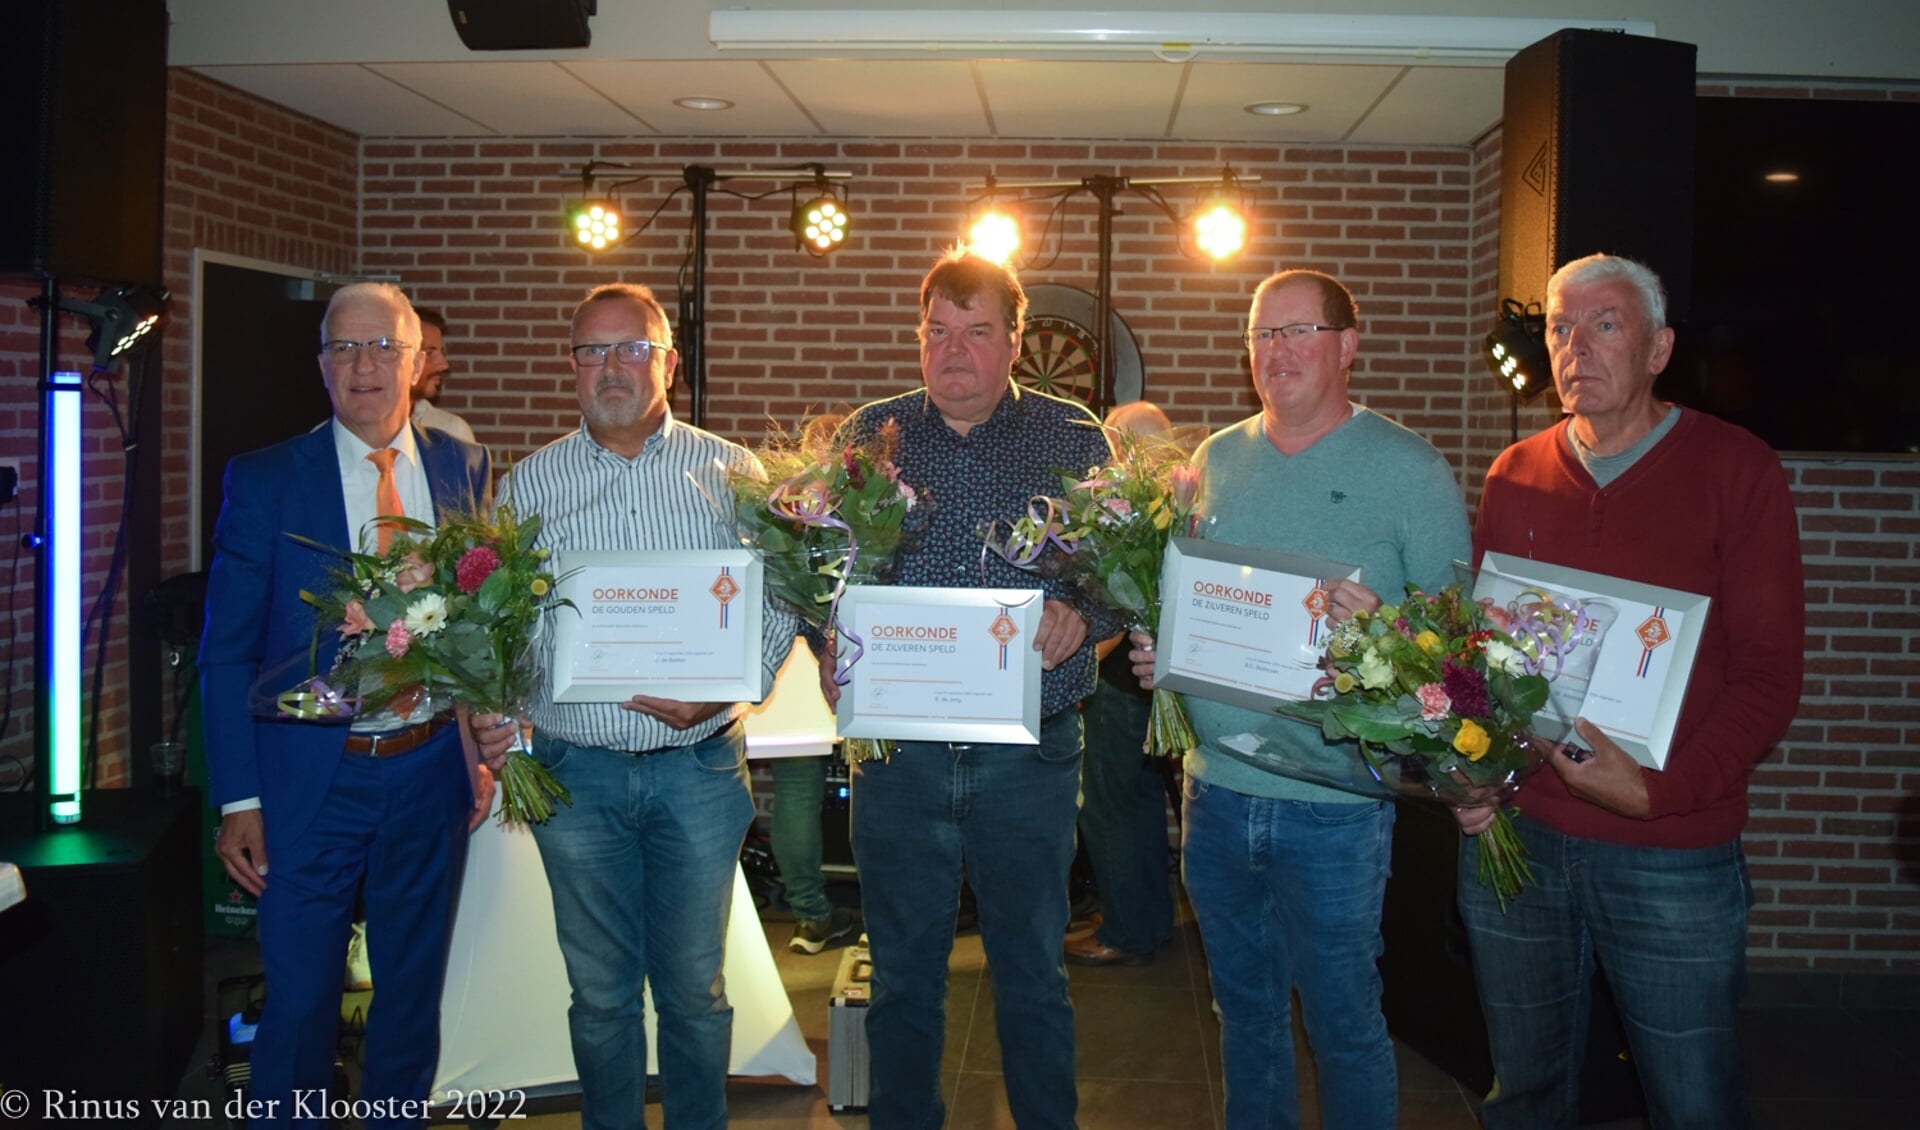 V.l.n.r. Ed Goverde, Jaap de Bakker, Erik de Jong, Albert Boshoven en Rini Aleman